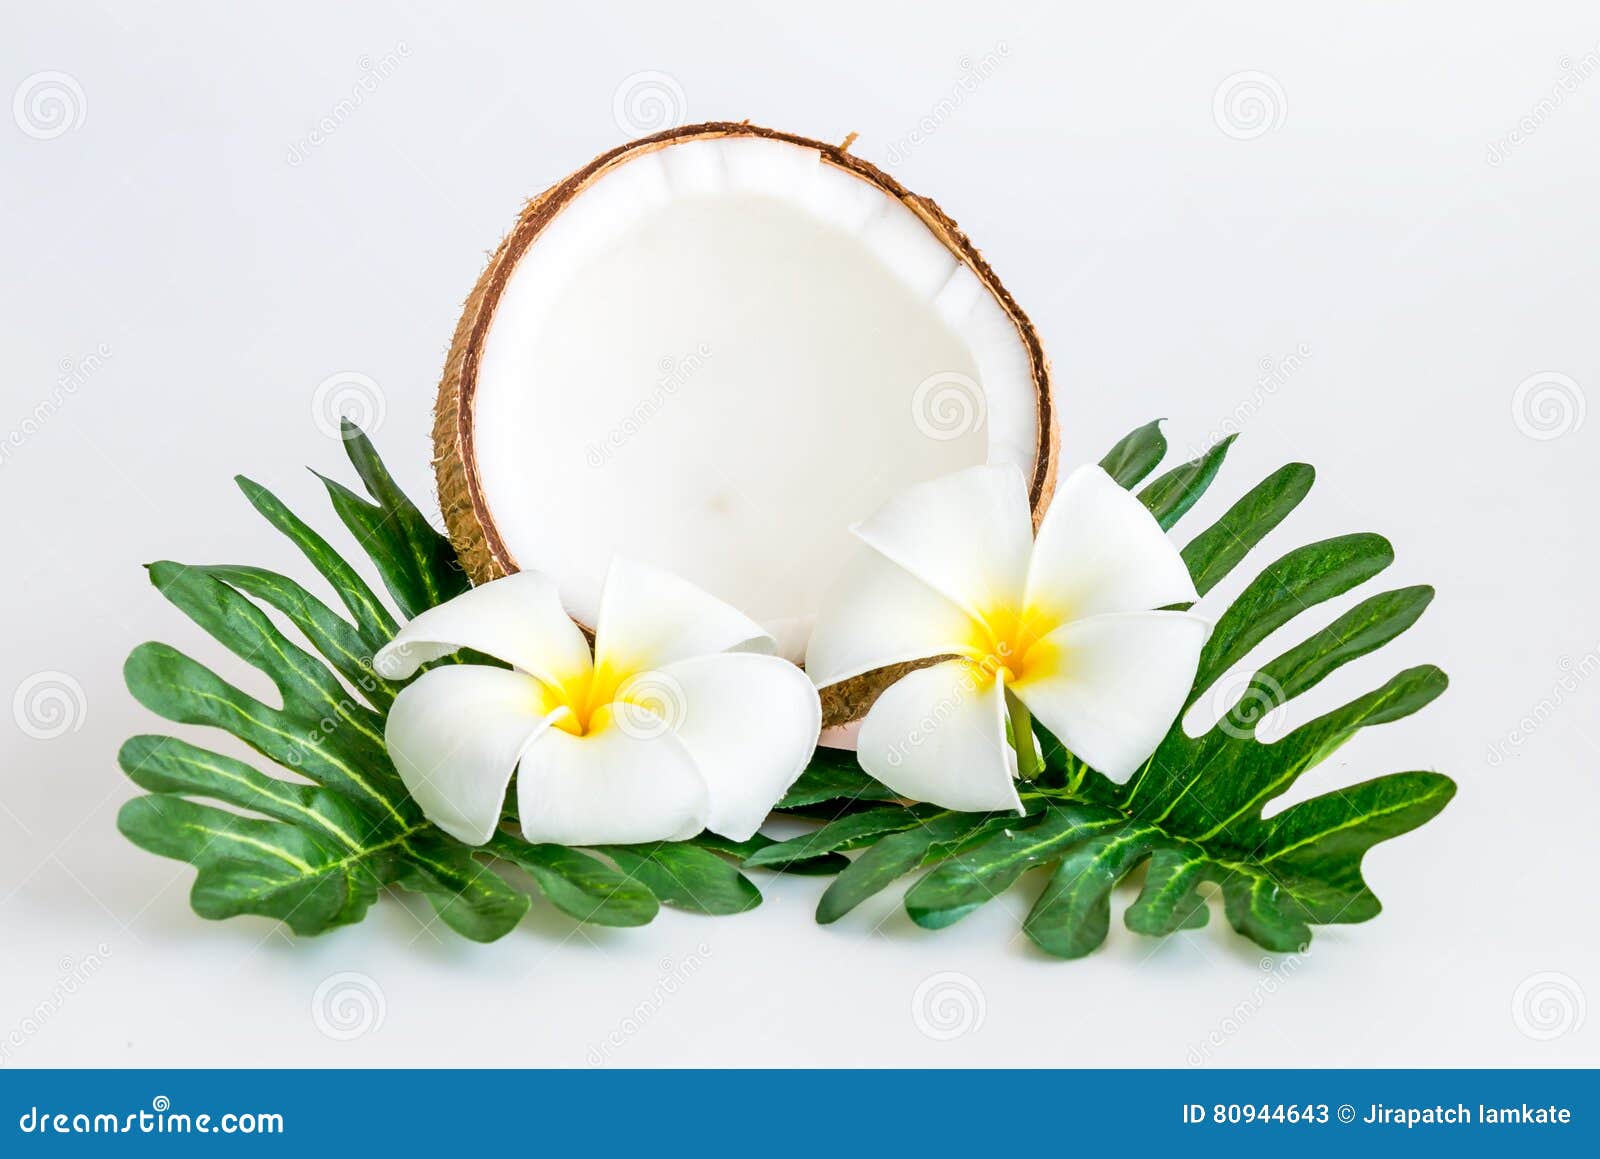 Kokosnuss Mit Blattern Und Blume Stockbild Bild Von Blume Blattern